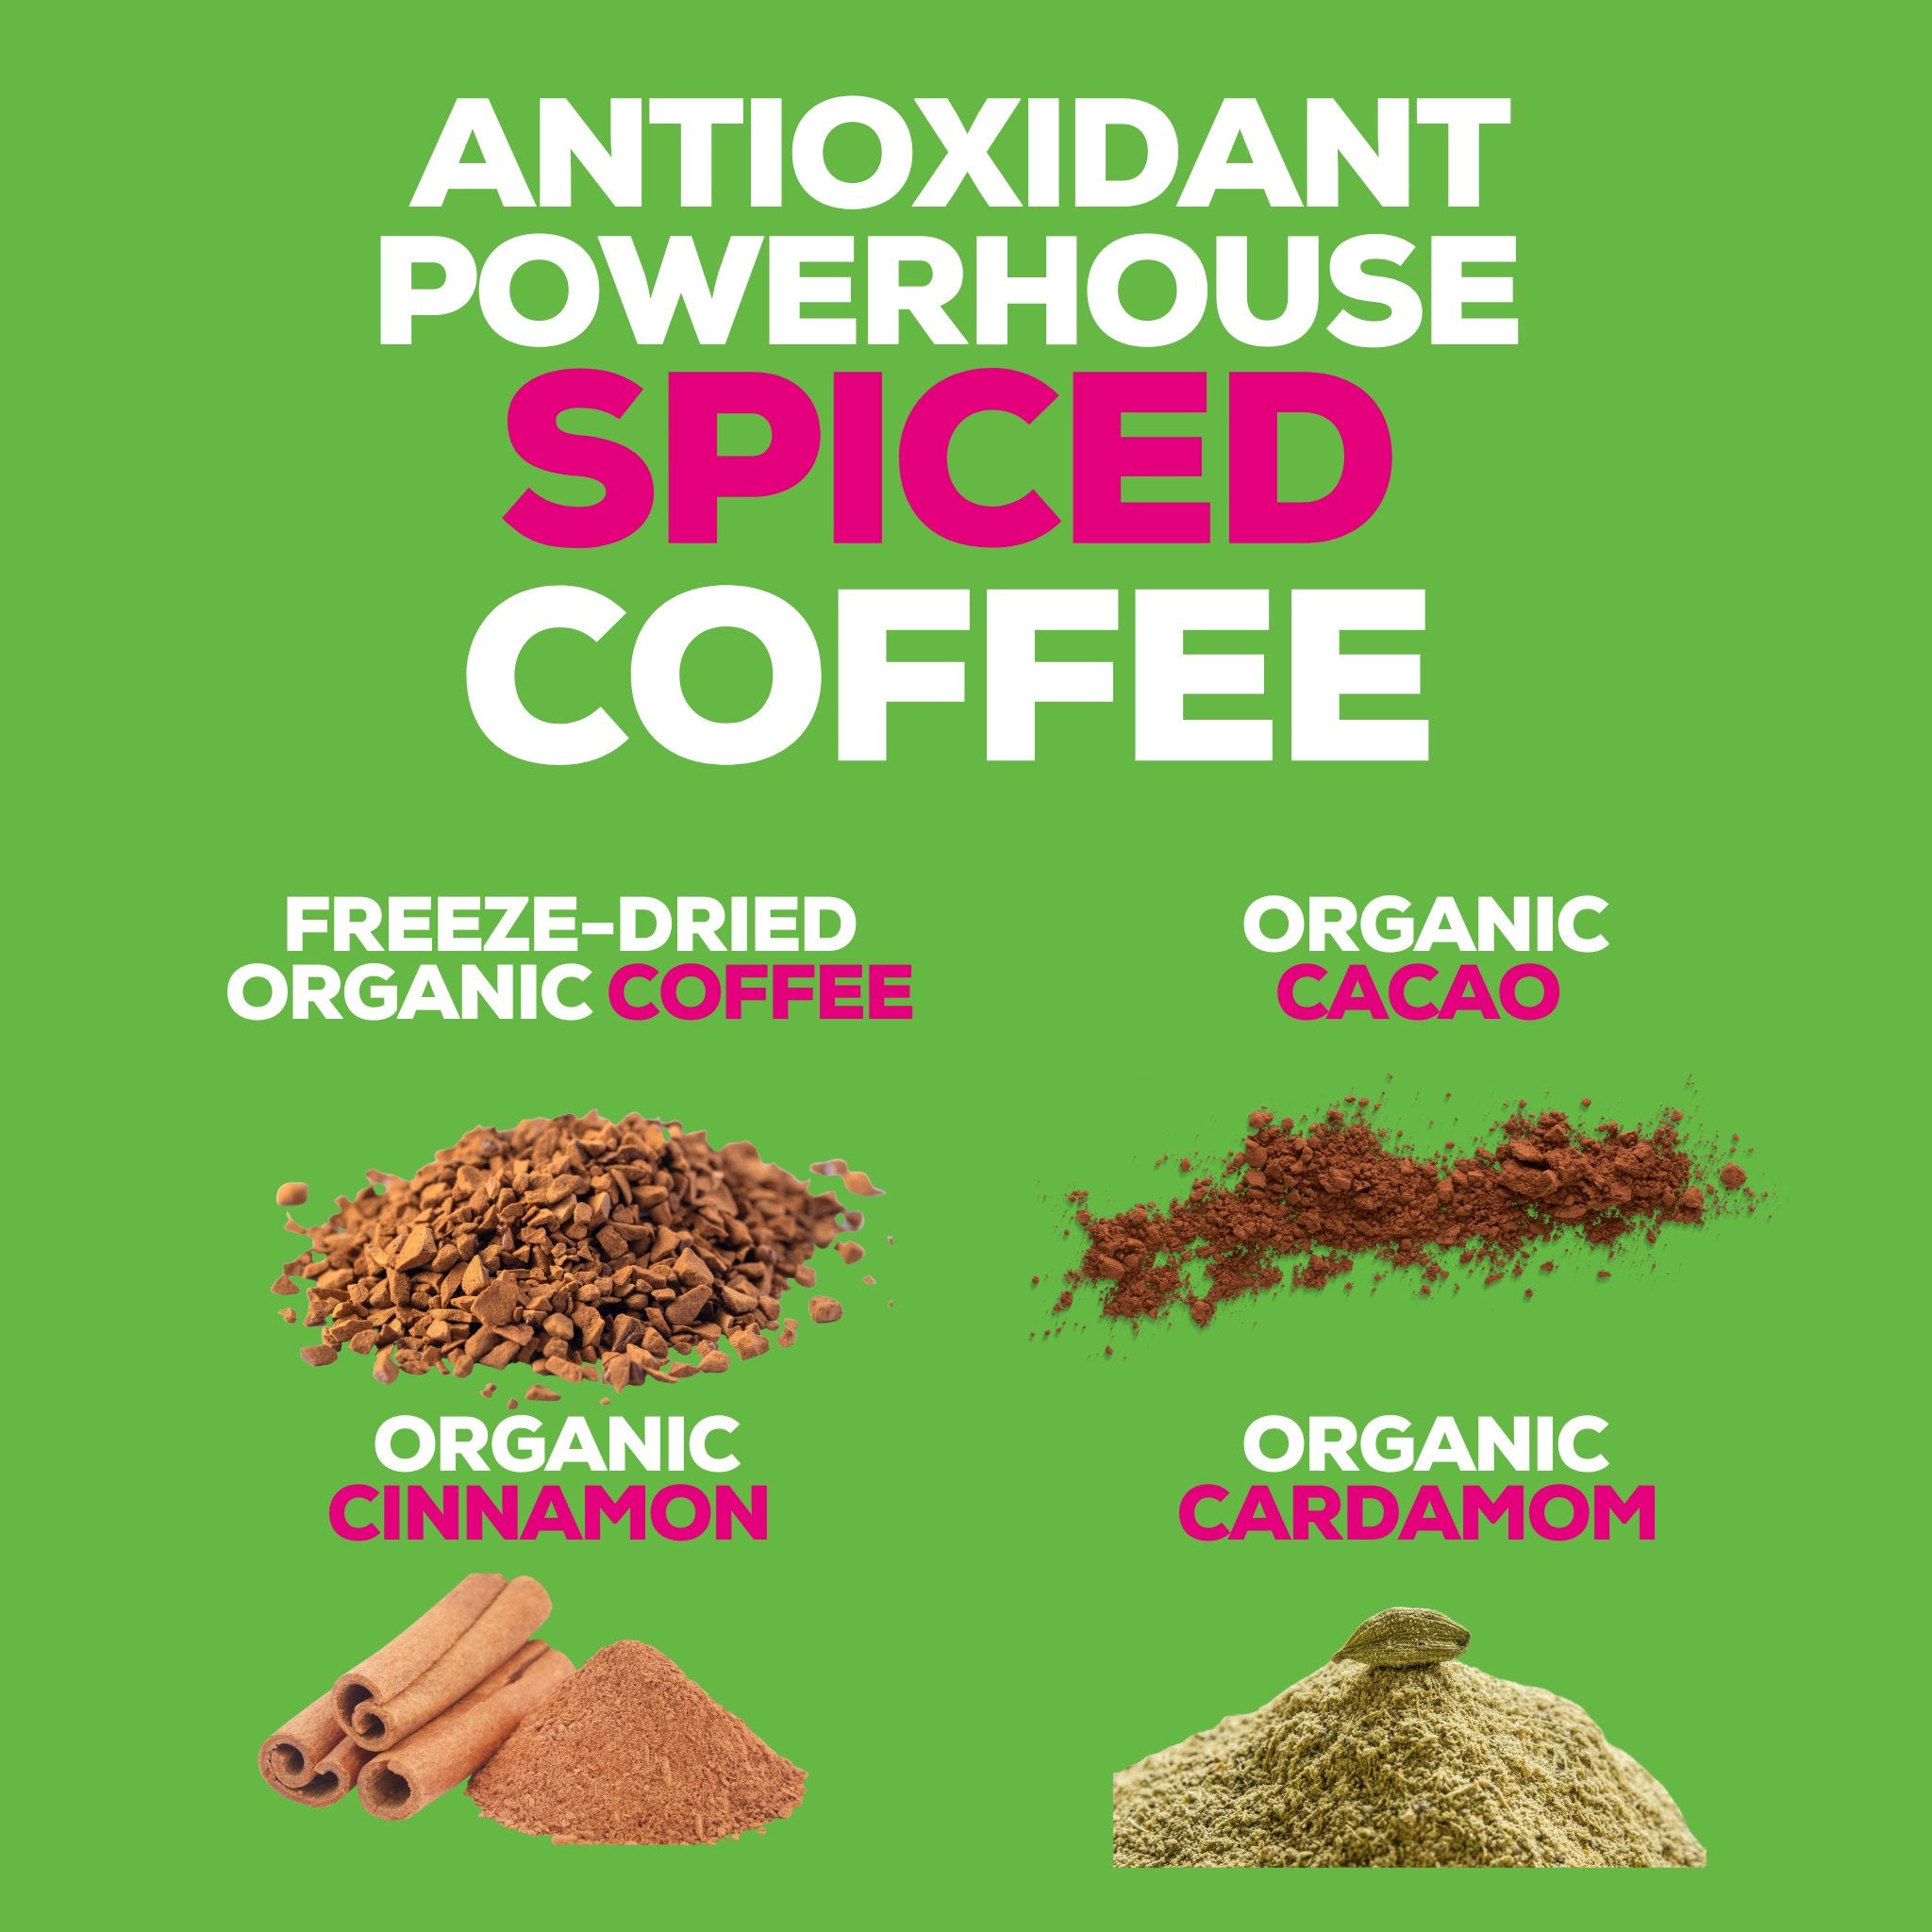 Decaffeinated Instant Mushroom Coffee with Spice & Adaptogen Superfoods Blend - MUUK' SUPERFOODS US